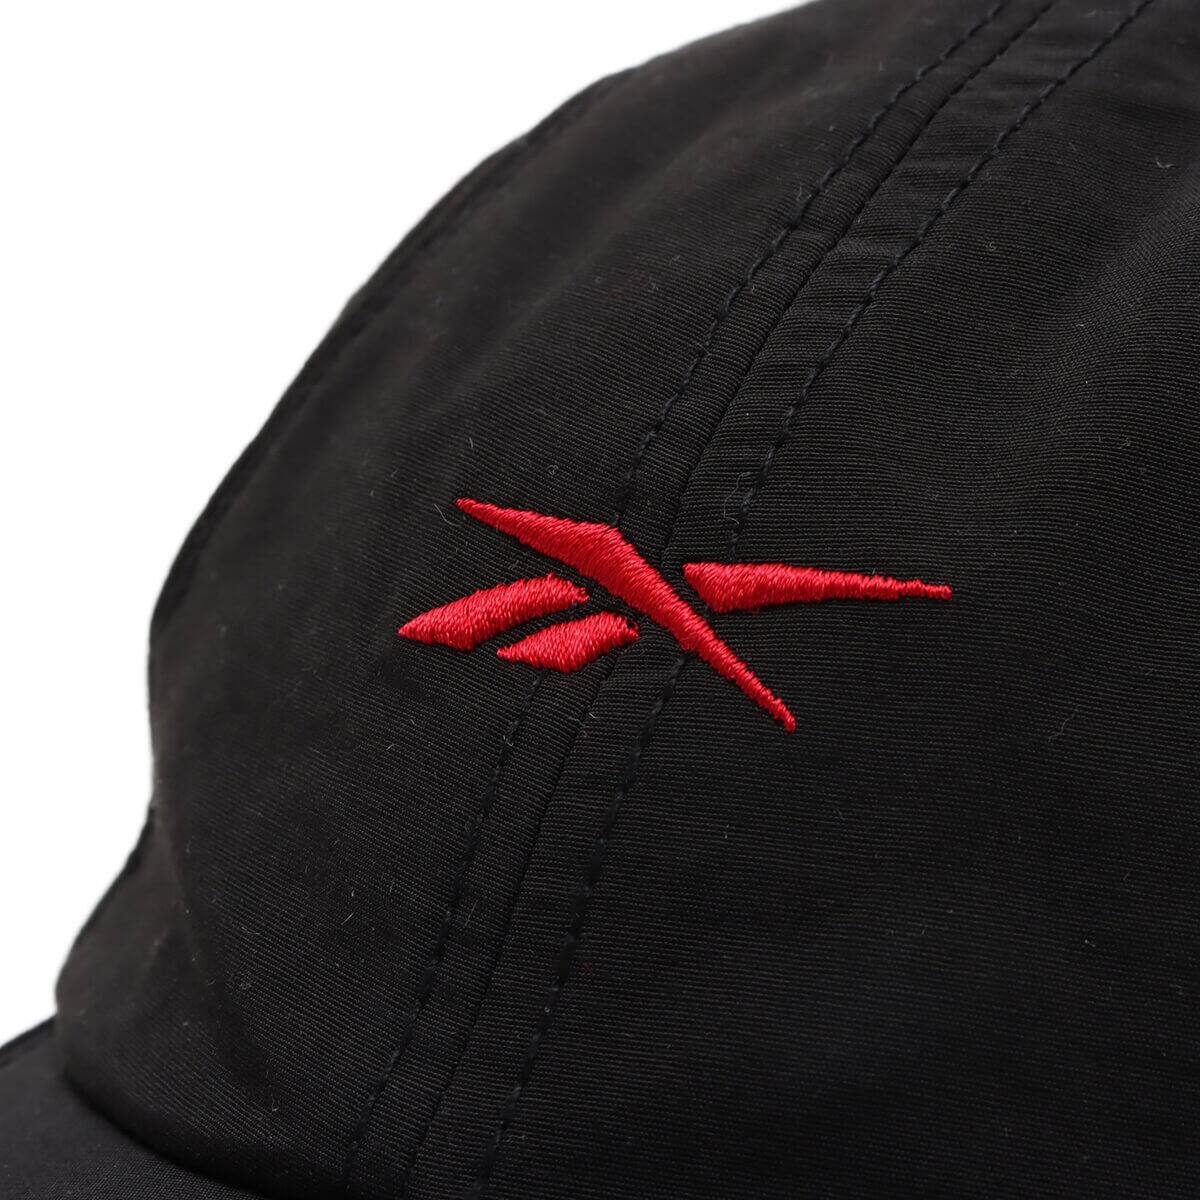 Reebok KANGHYUK Baseball CAP Black - ブラック - S/M